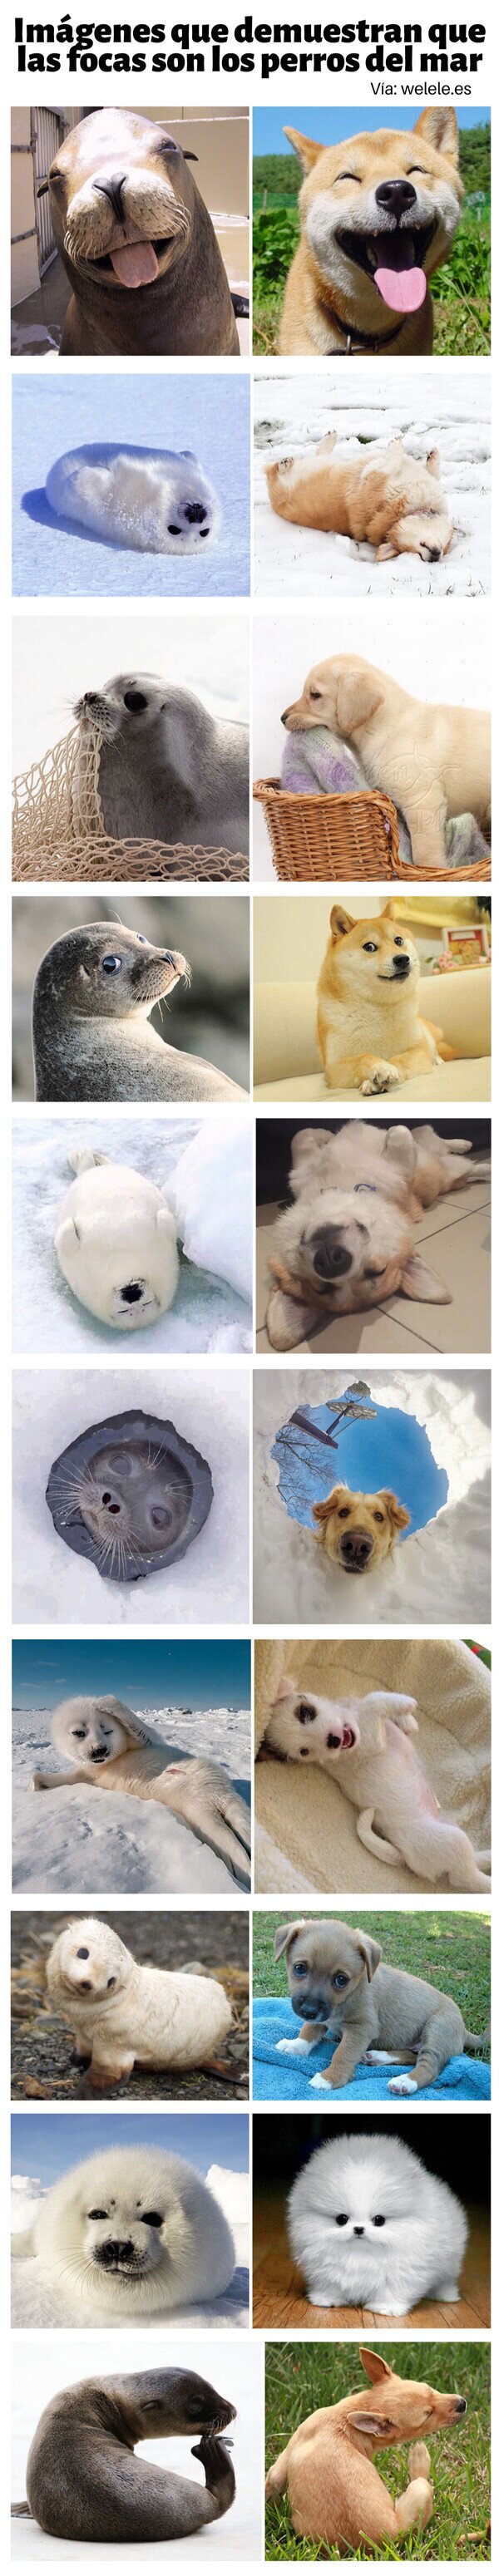 Meme_otros - Imágenes que demuestran que las focas son los perros del mar